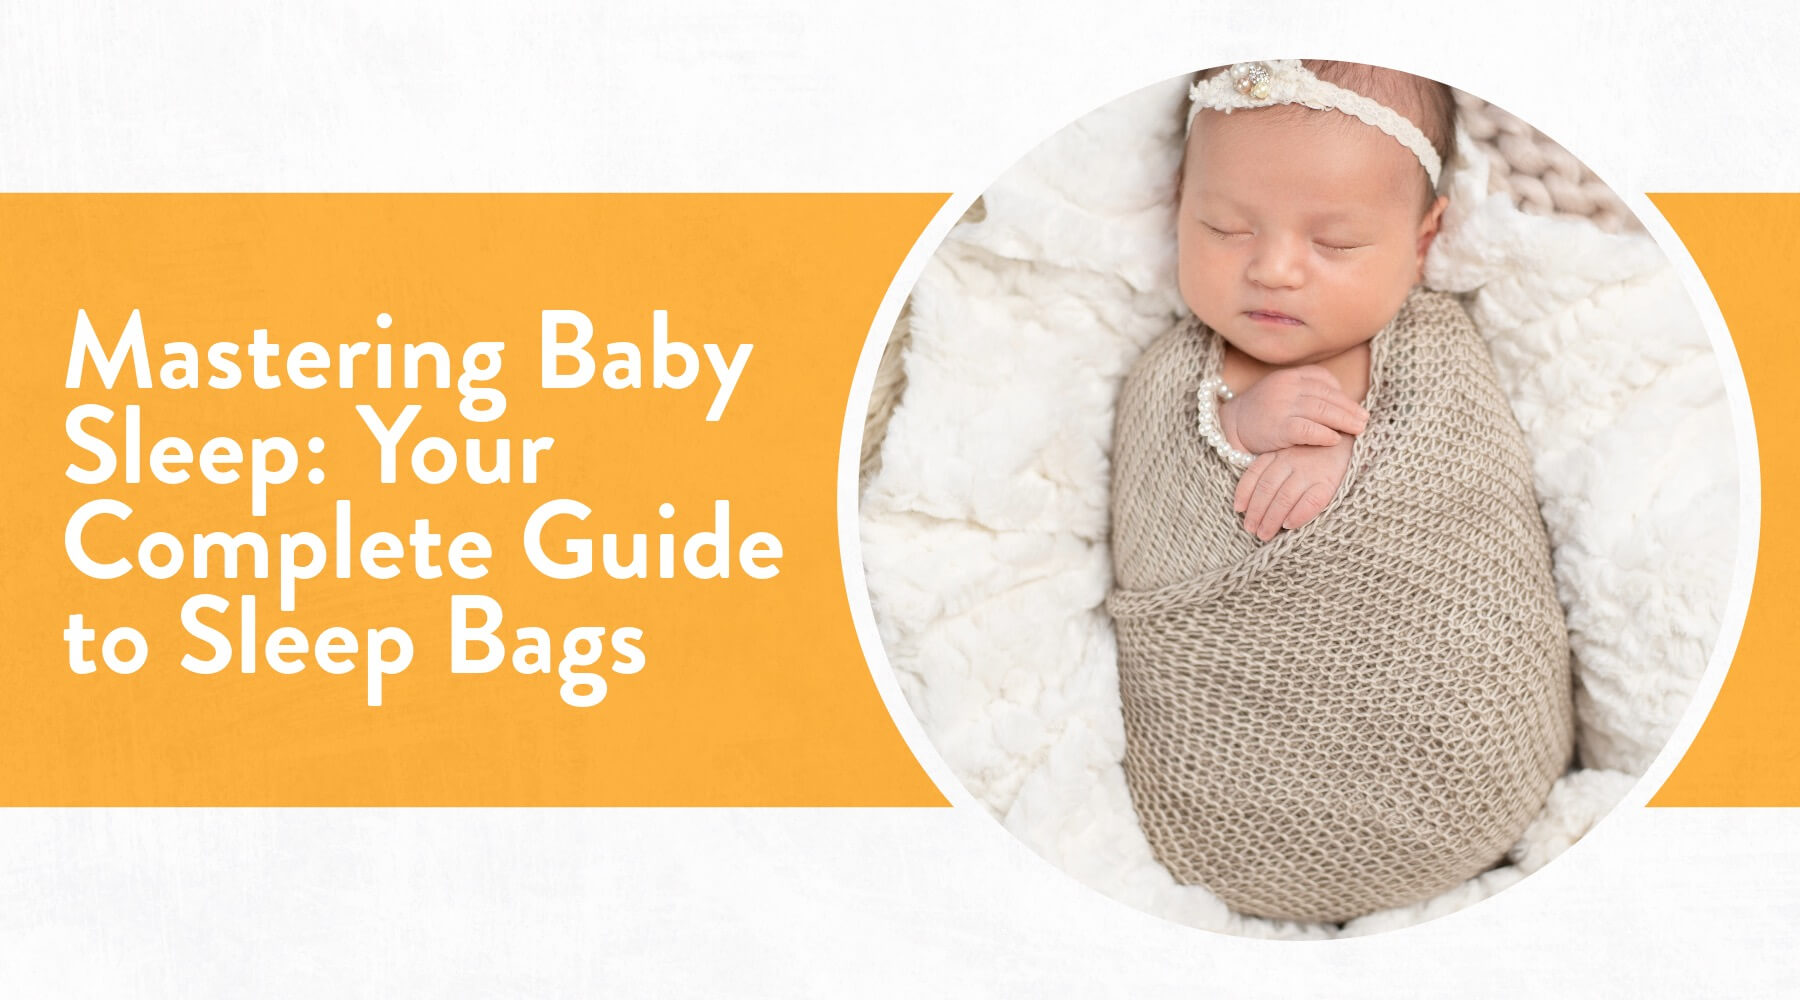 ▷ La importancia de elegir el saco de dormir adecuado para tu bebé